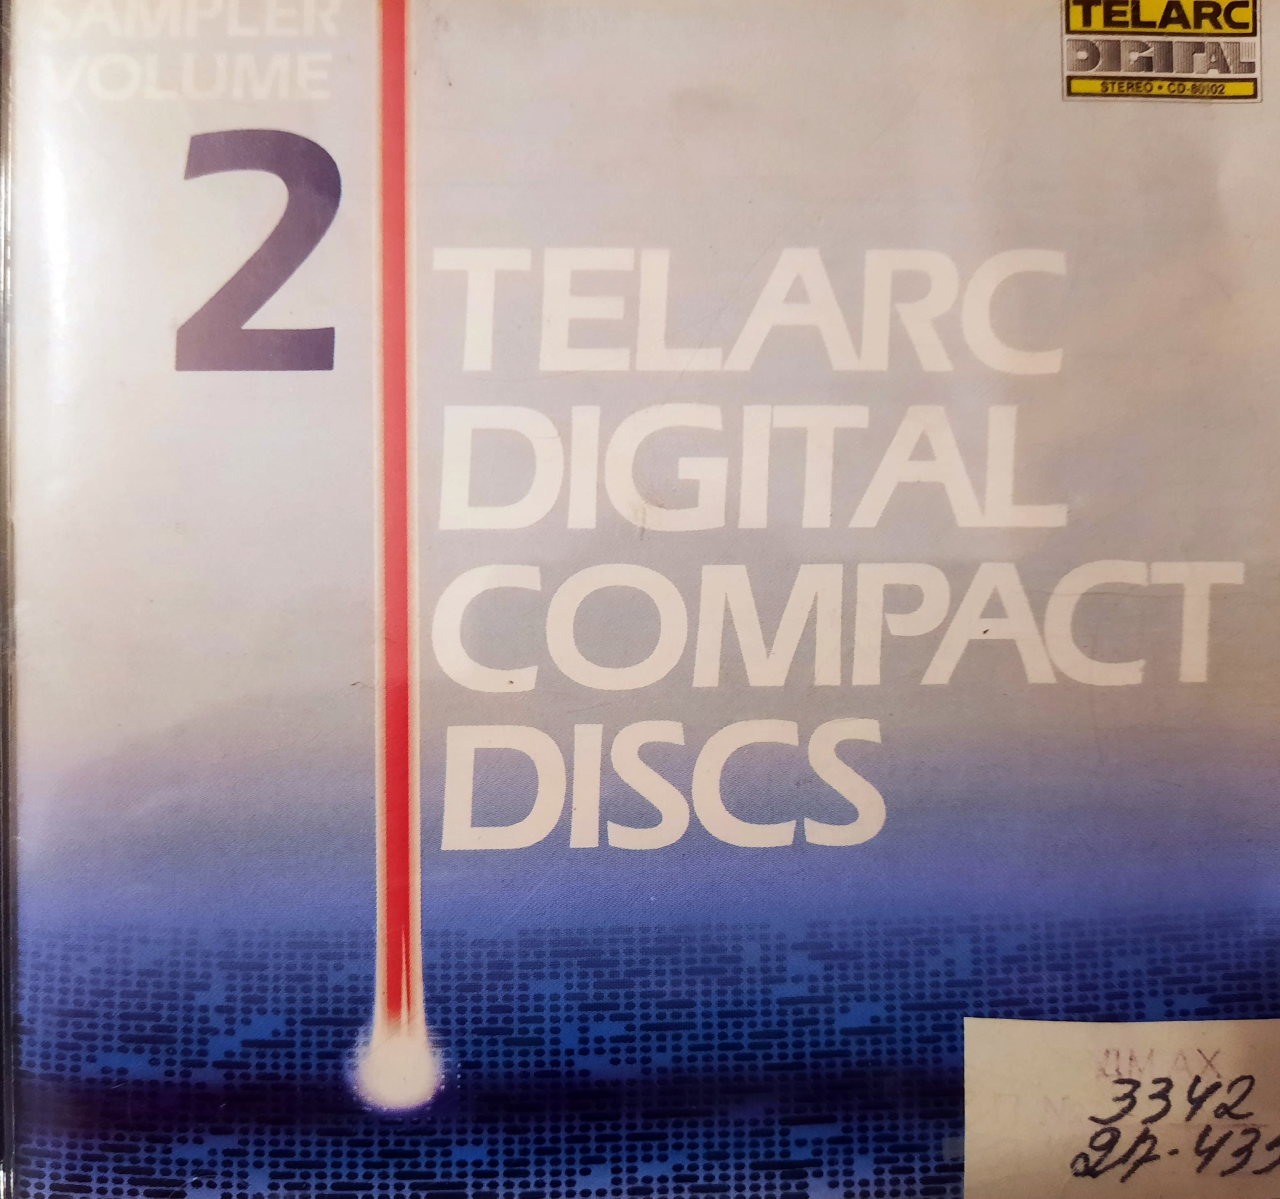 2 Telarc  Digital Compact Discs 